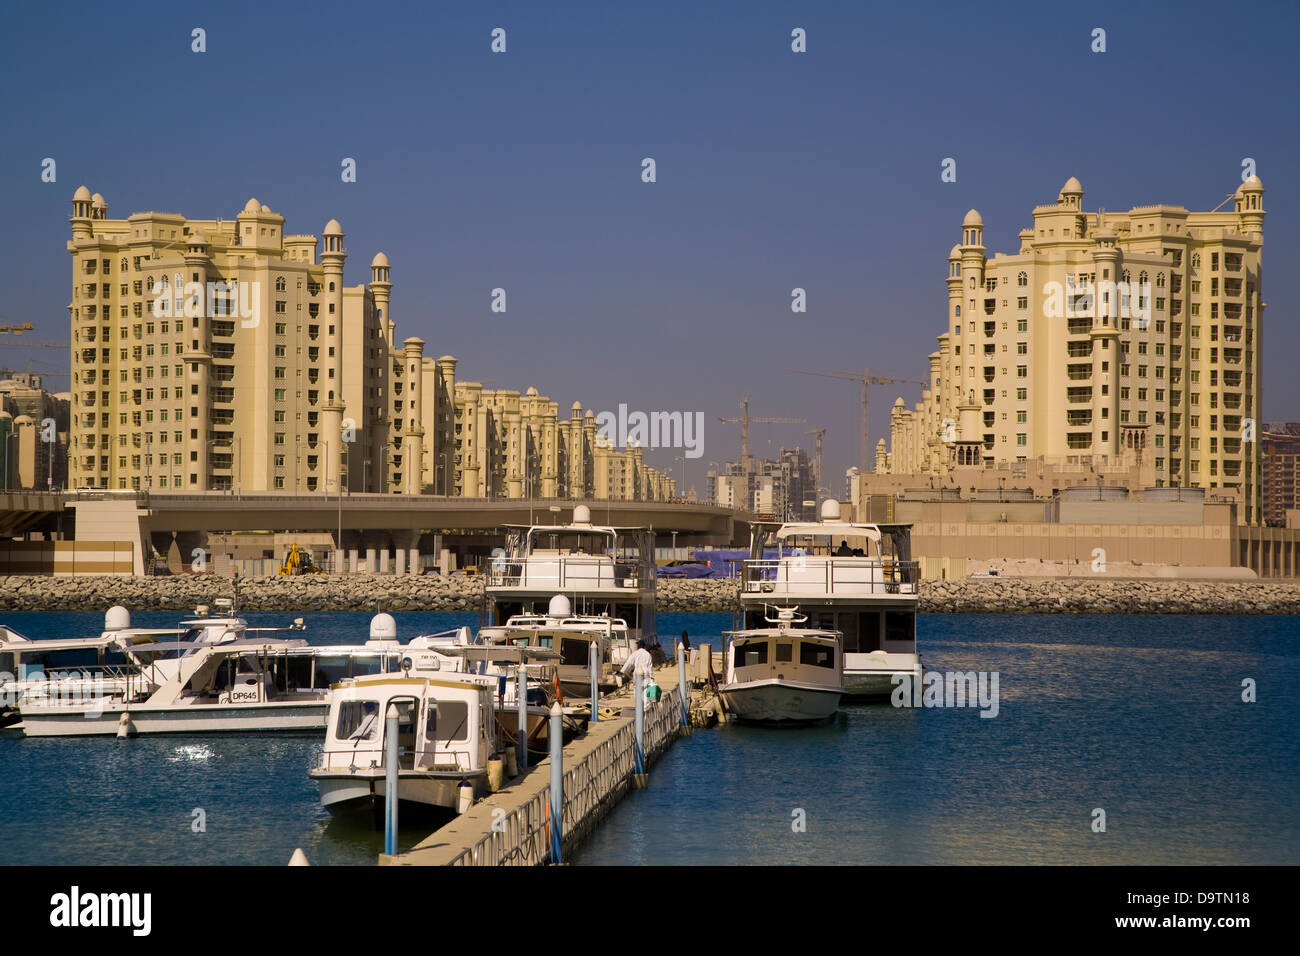 Boats front massive buildings in Dubai, U.A.E. Stock Photo